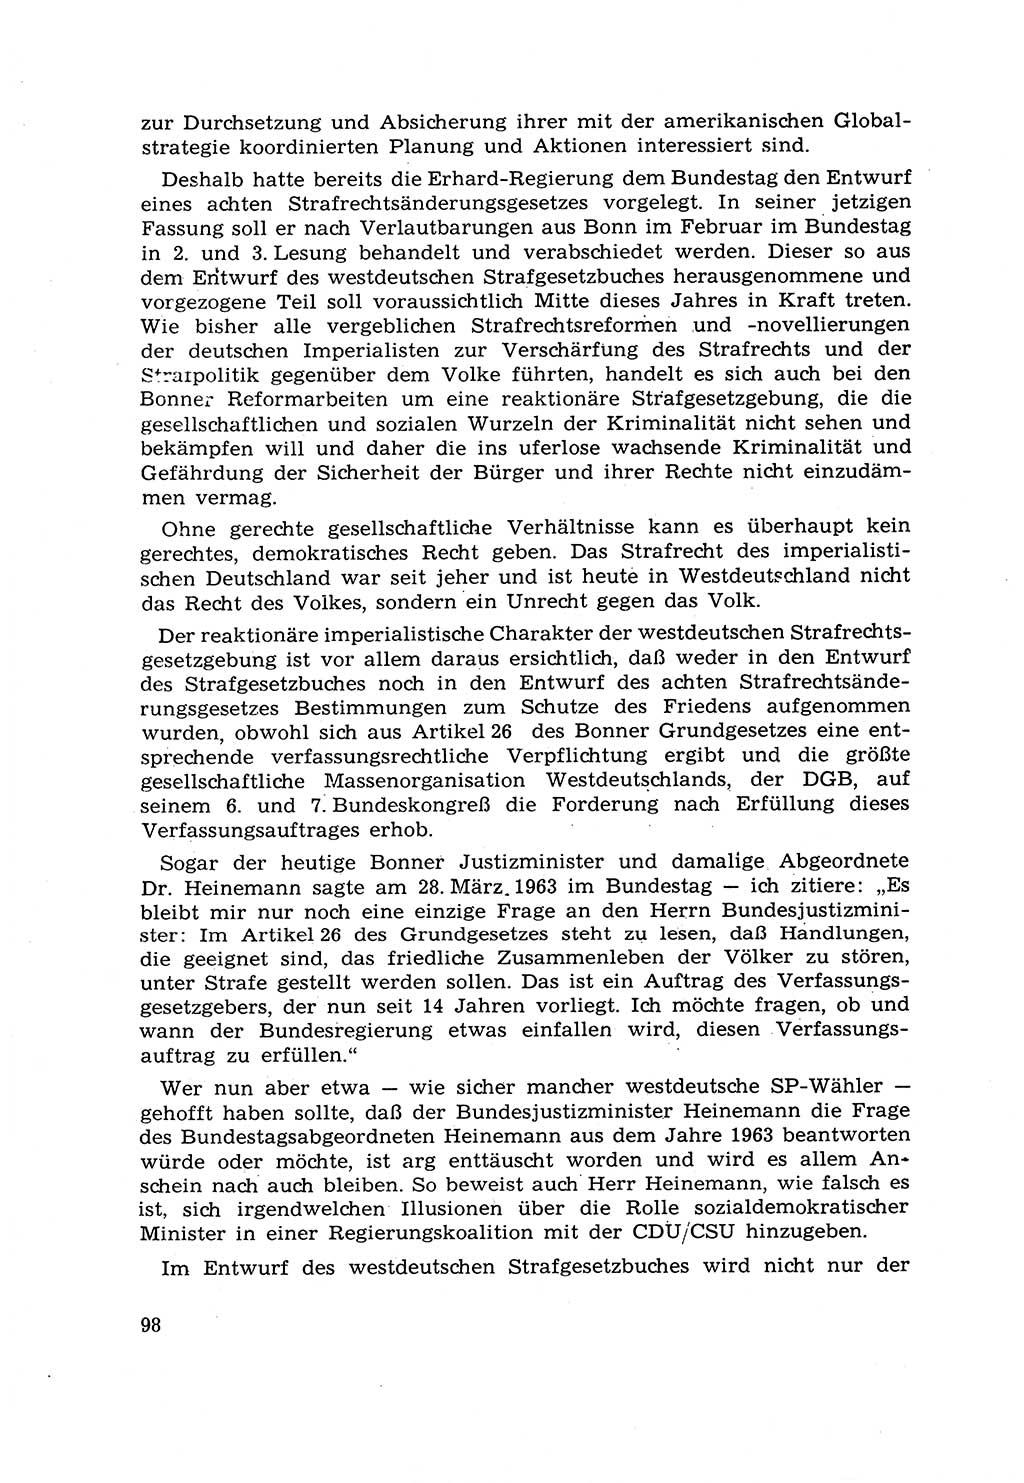 Strafrecht [Deutsche Demokratische Republik (DDR)] 1968, Seite 98 (Strafr. DDR 1968, S. 98)